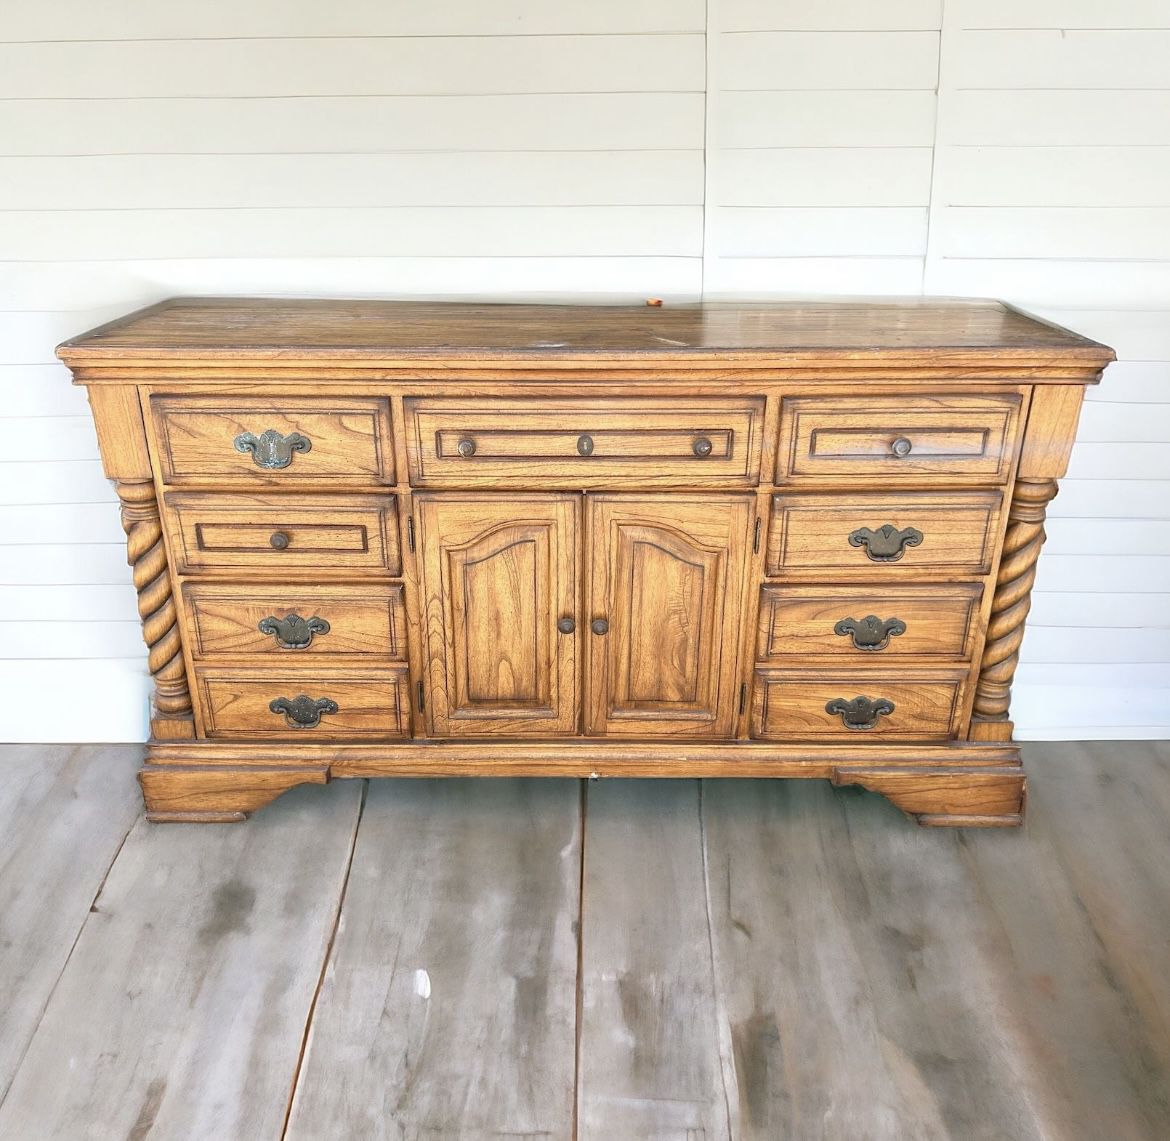 $65 for Large Wood Storage Dresser Cabinet